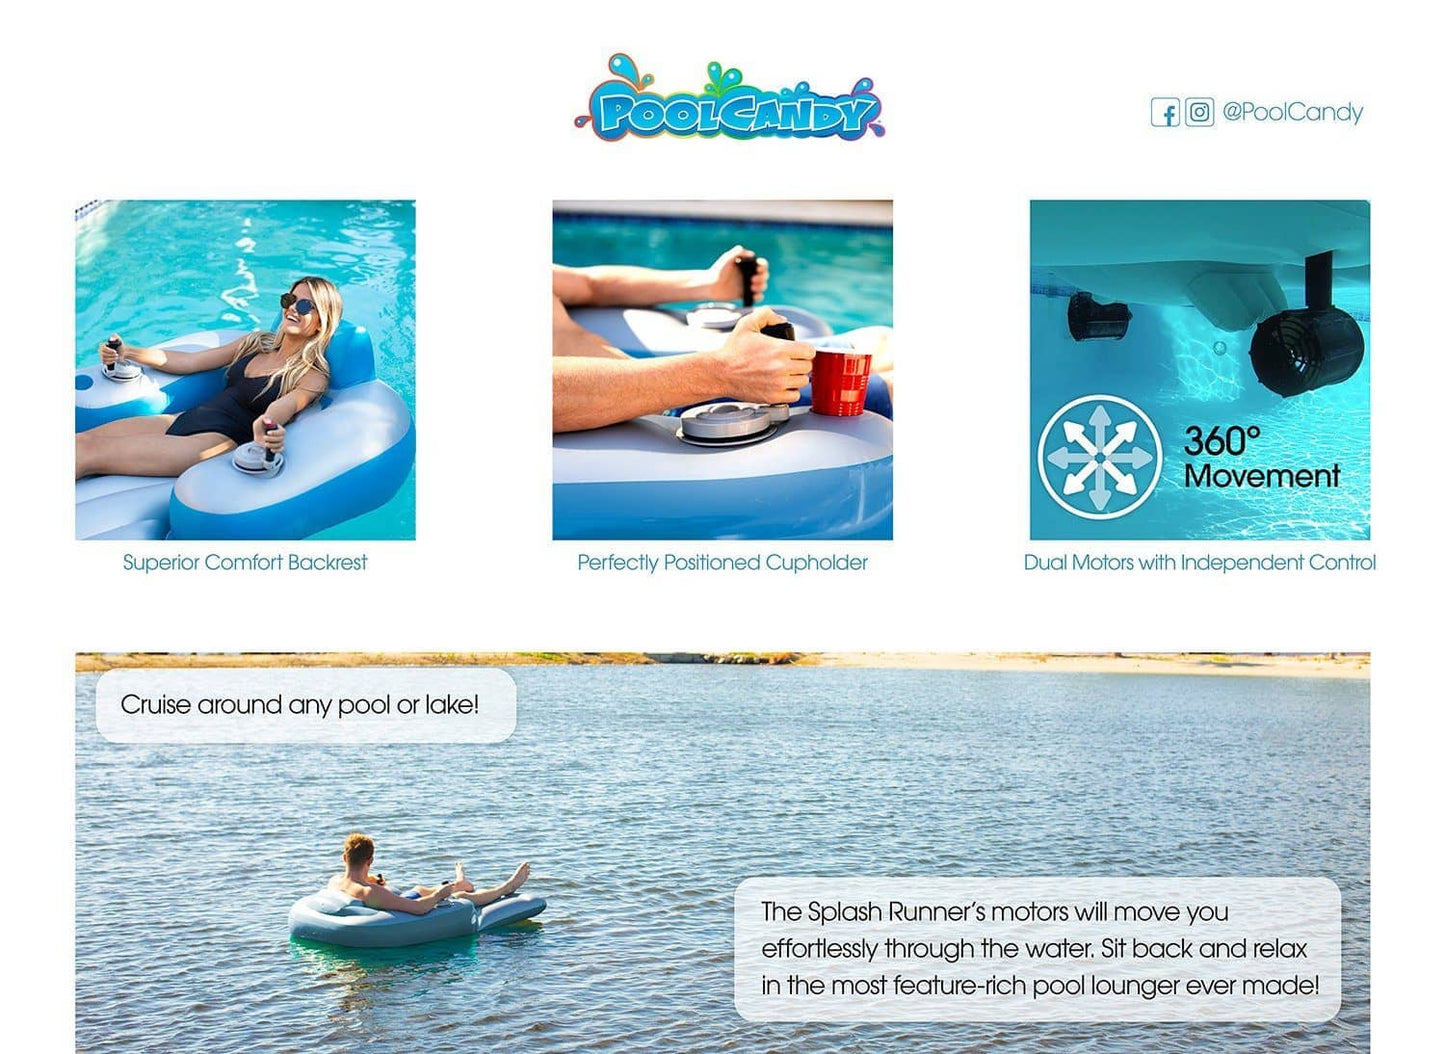 Splash Runner Motorized Inflatable Pool Tube 2.5 PoolCandy